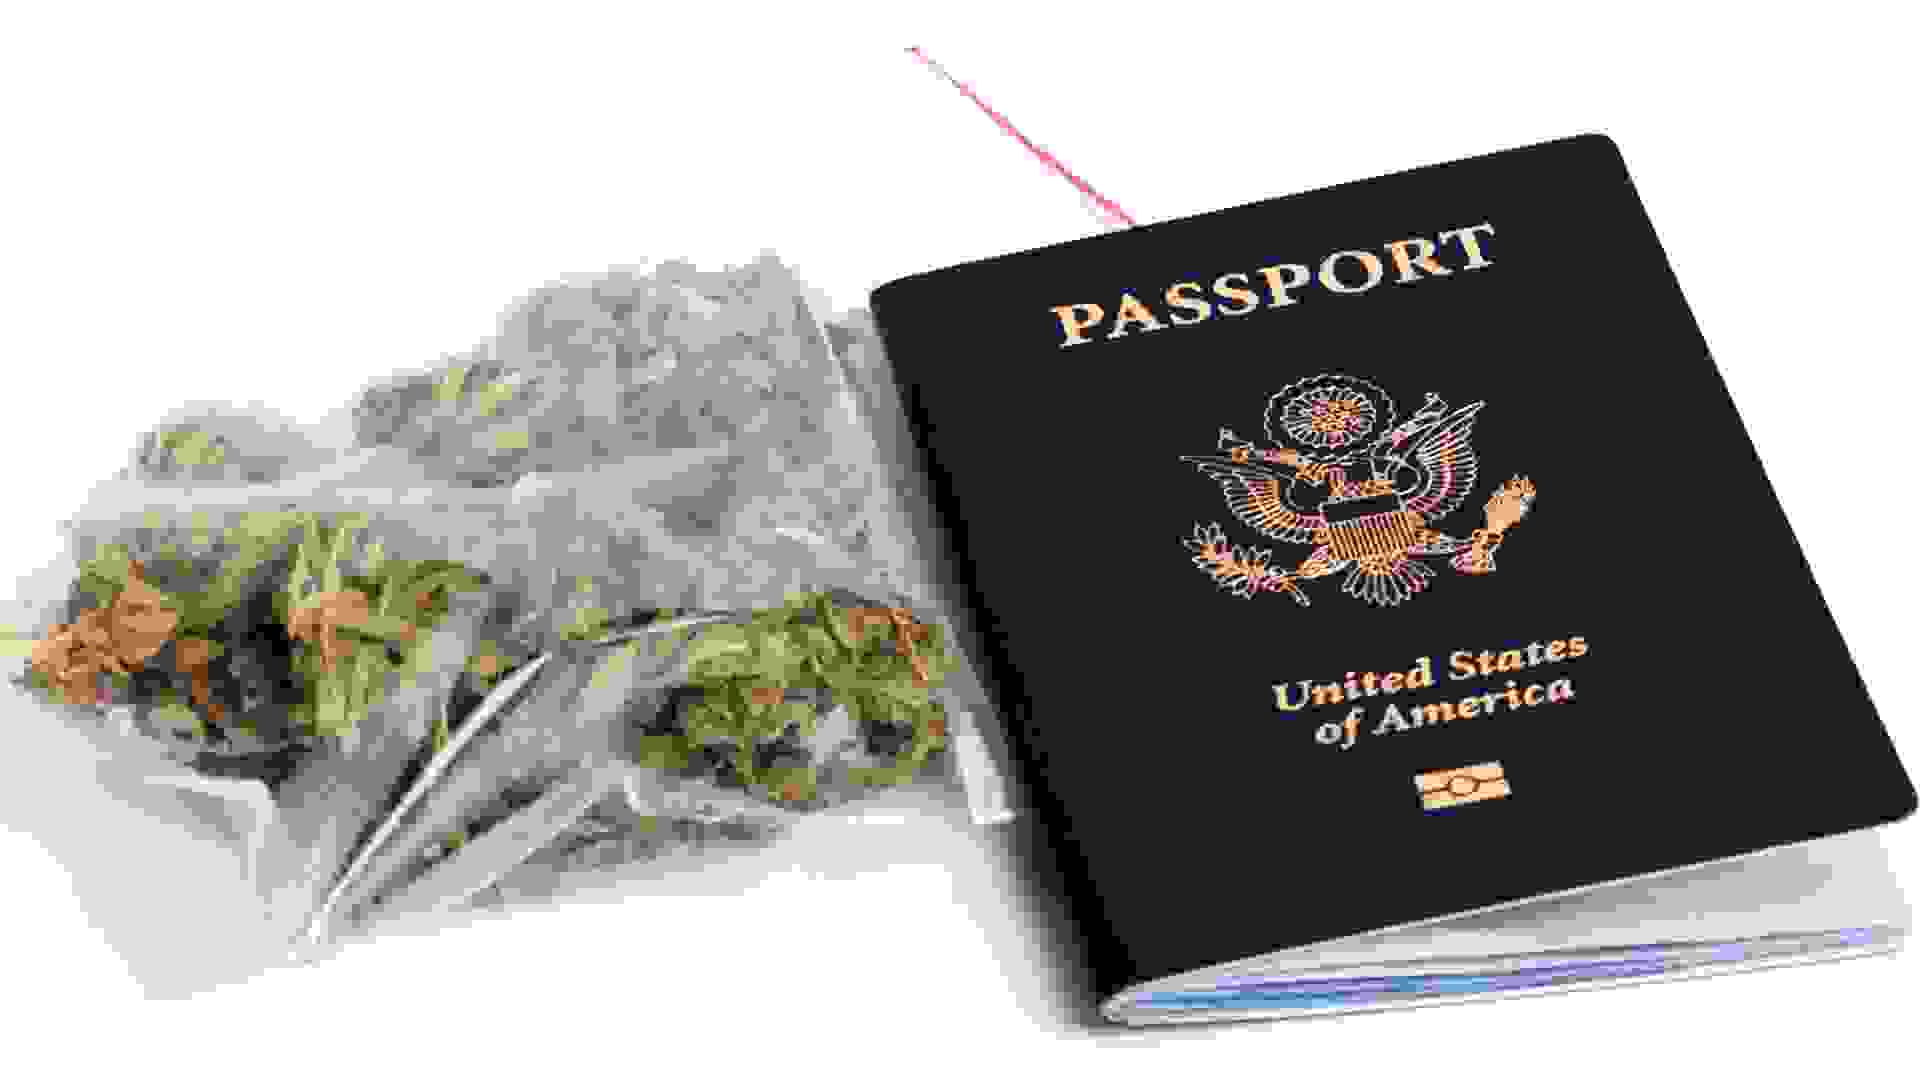 A USA passport and a zip-lock plastic bag containing Marijuana.